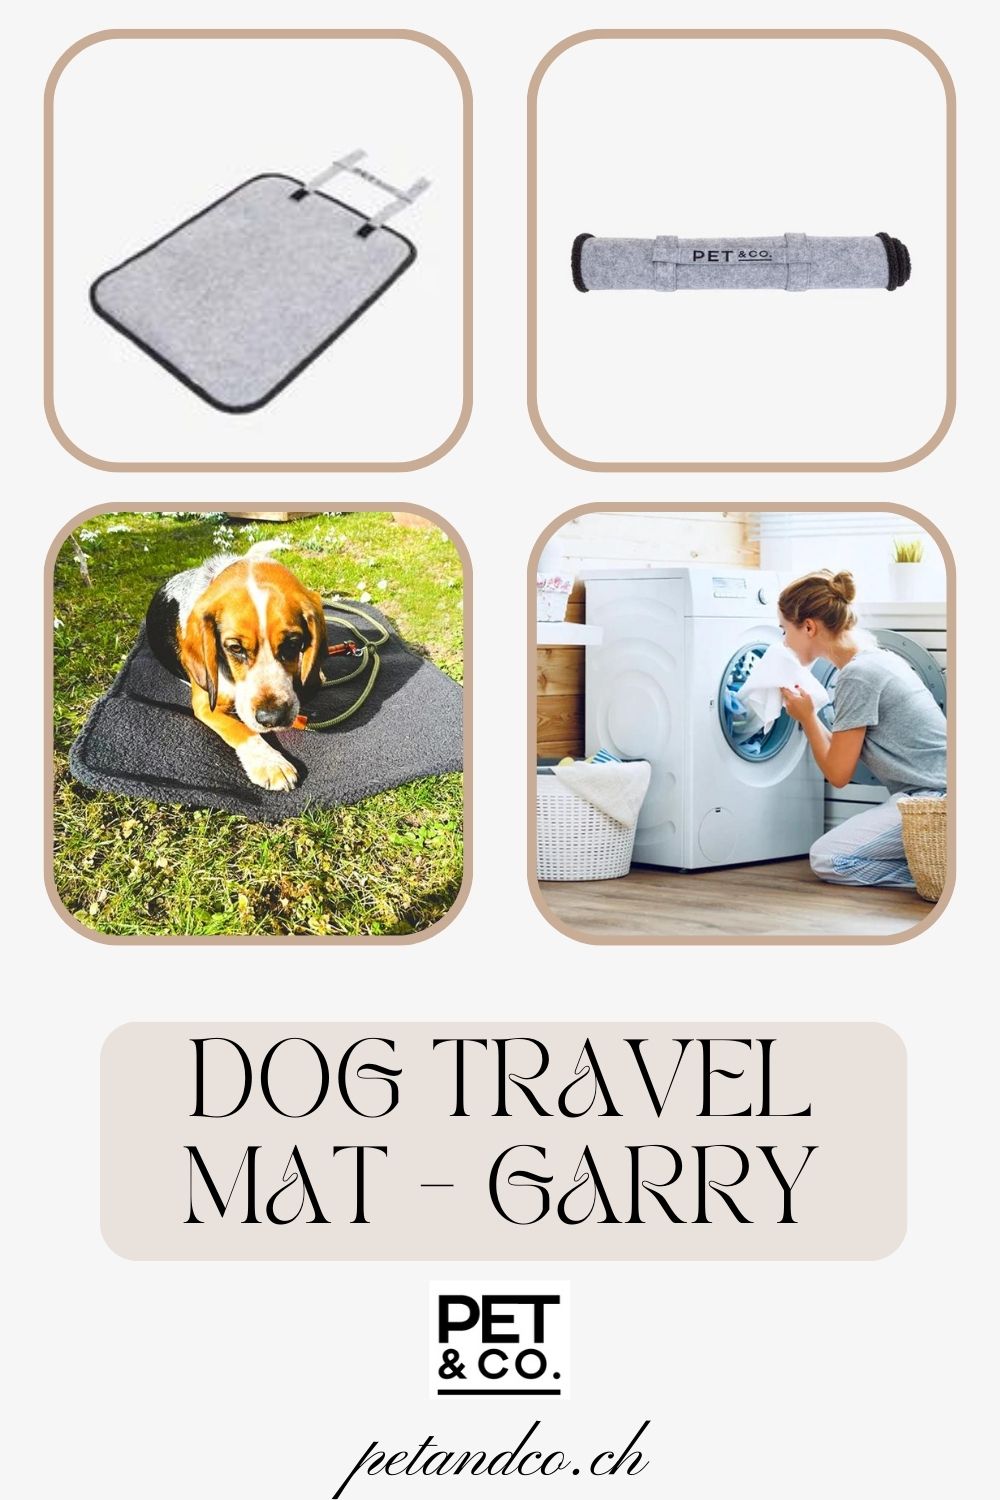 Dog Travel Mat Online - Garry - Pet & Co.